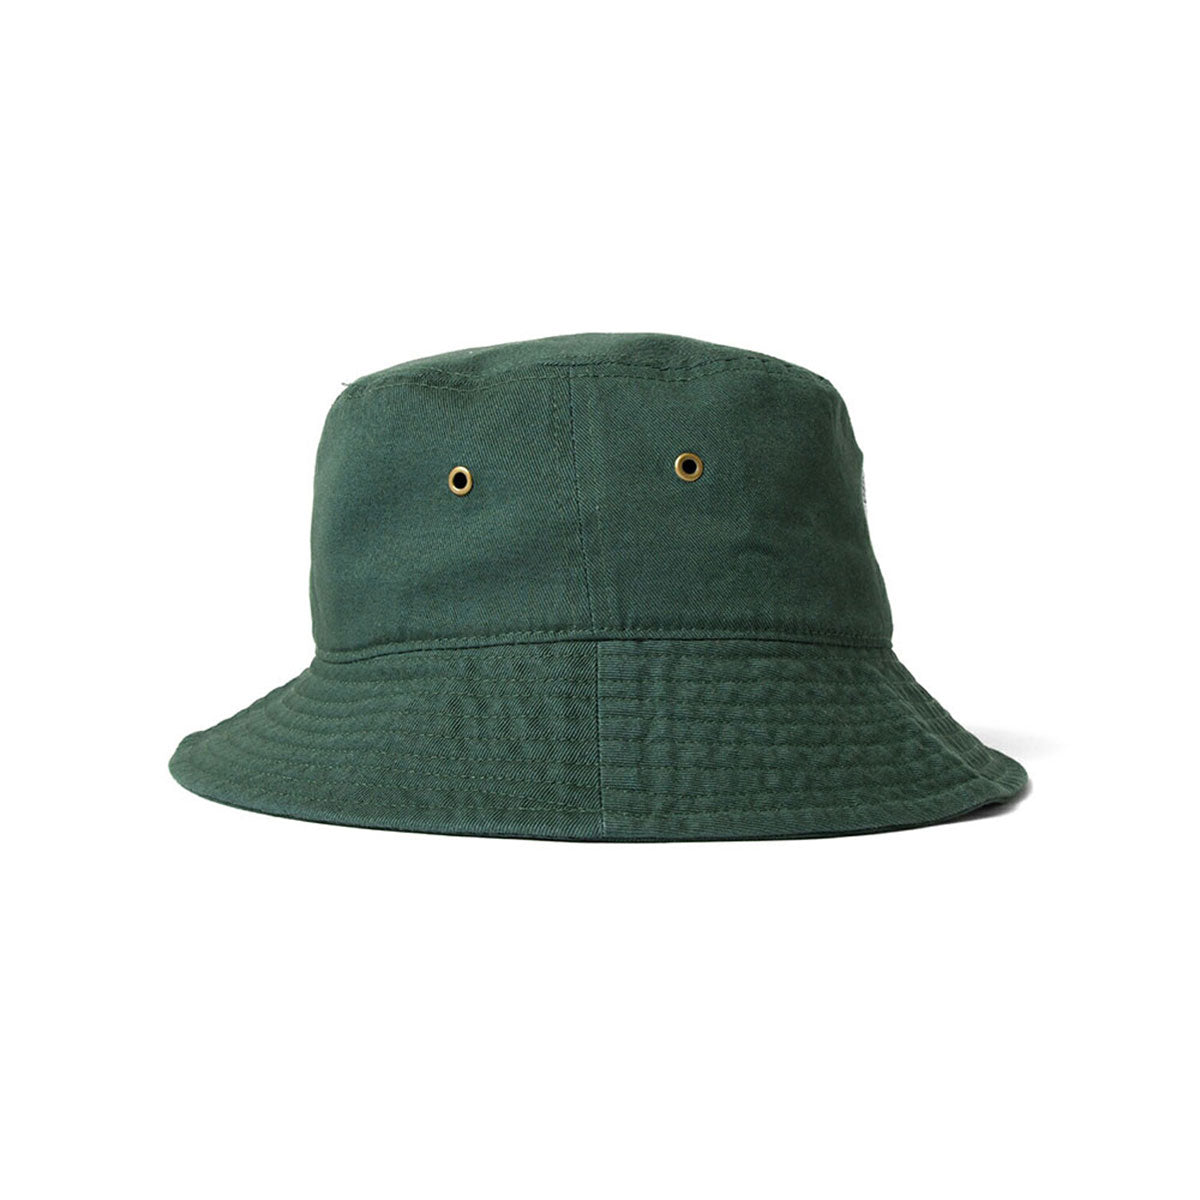 PABST BLUE RIBBON LOGO BUCKET HAT DARK GREEN【PB211405】